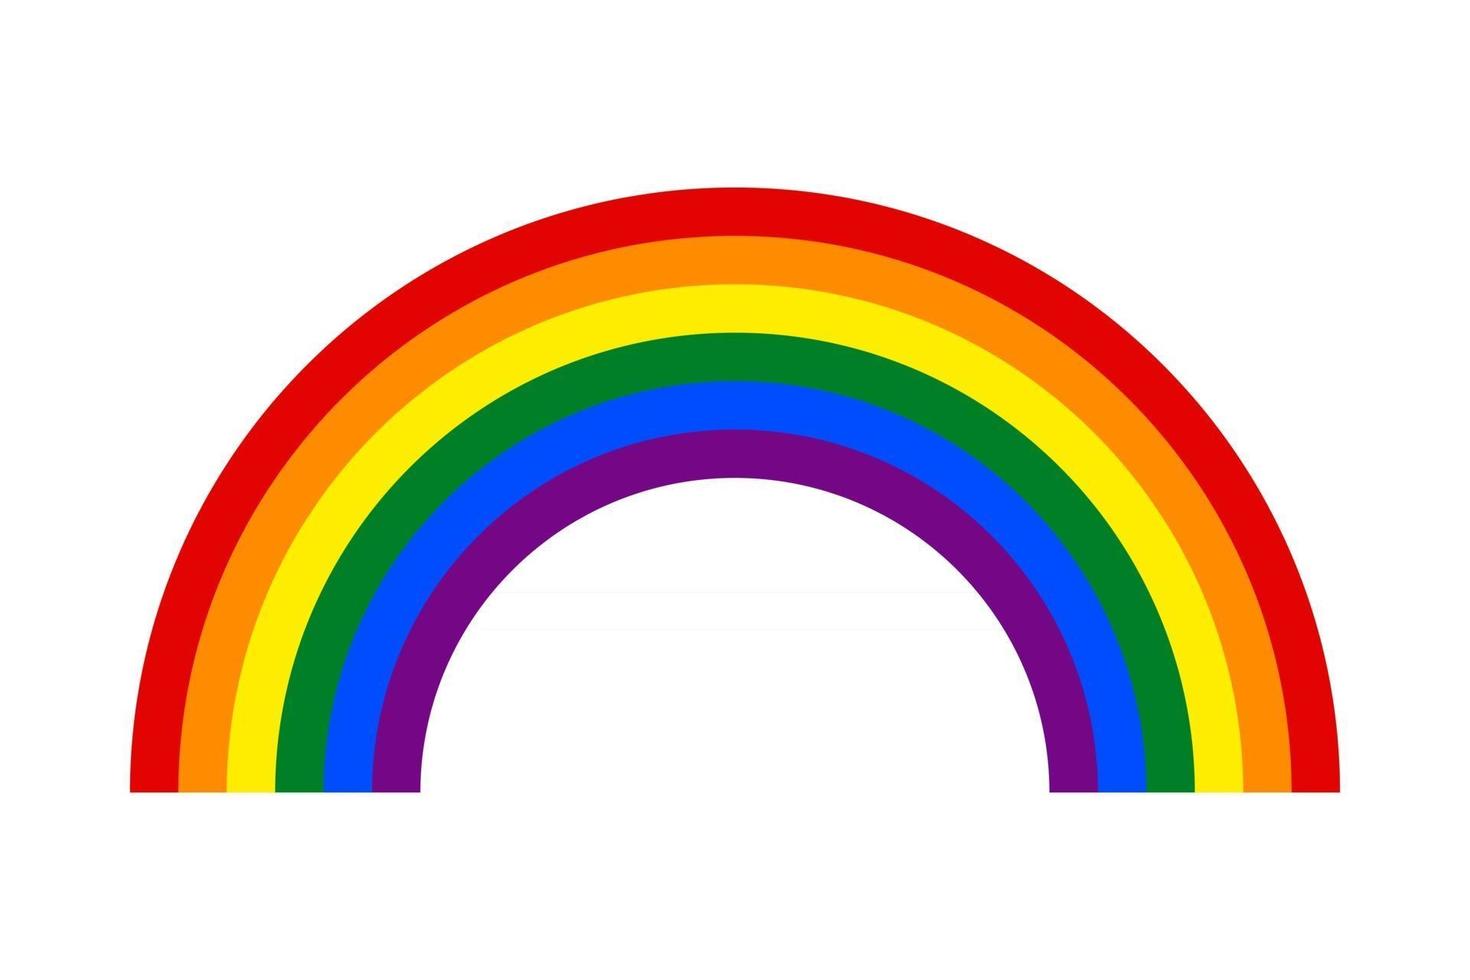 regenboog met zes kleuren symbool van lgbt-gemeenschap vector